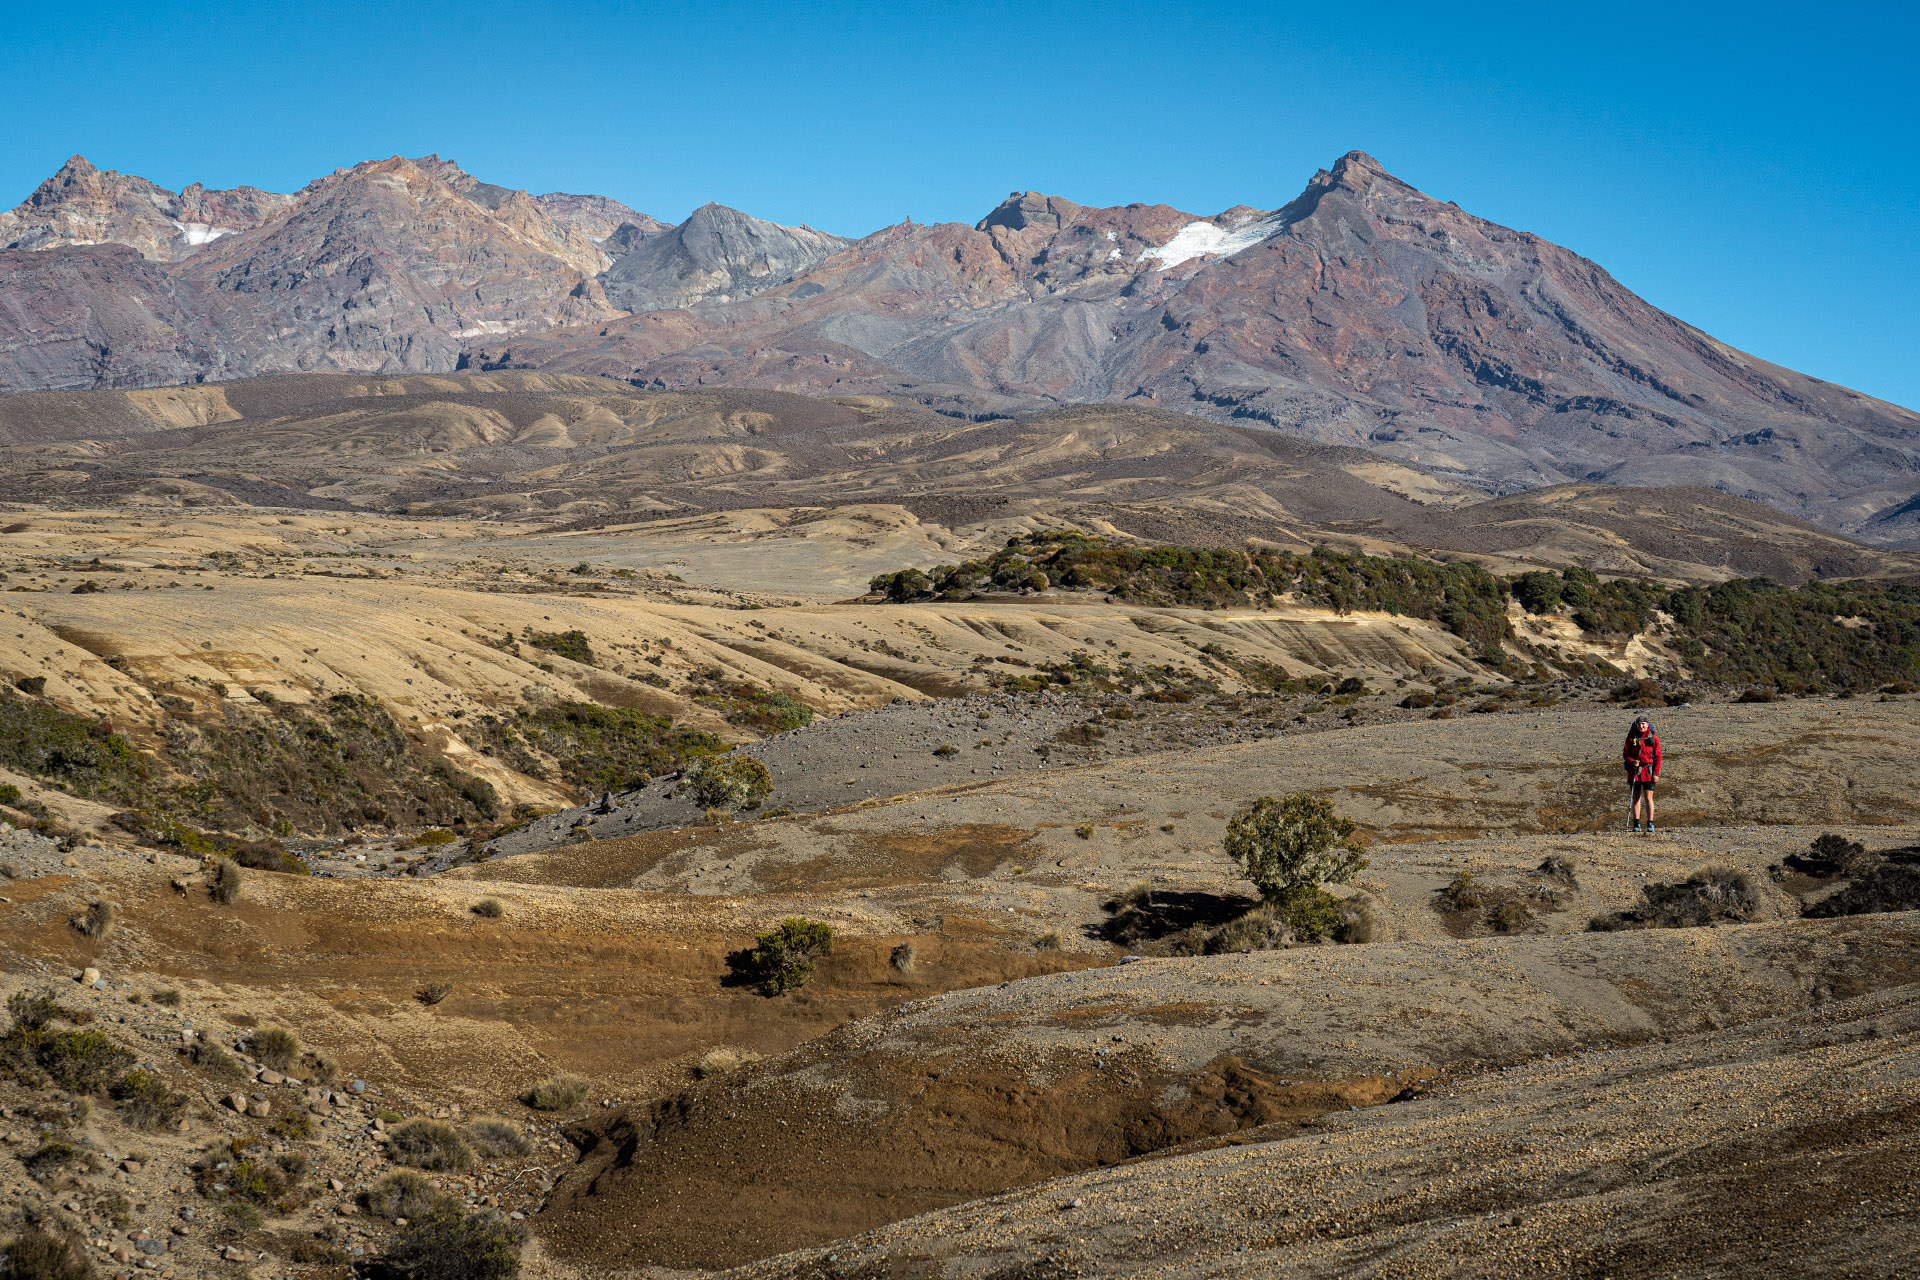 Rangipo desert and Ruapehu maunga